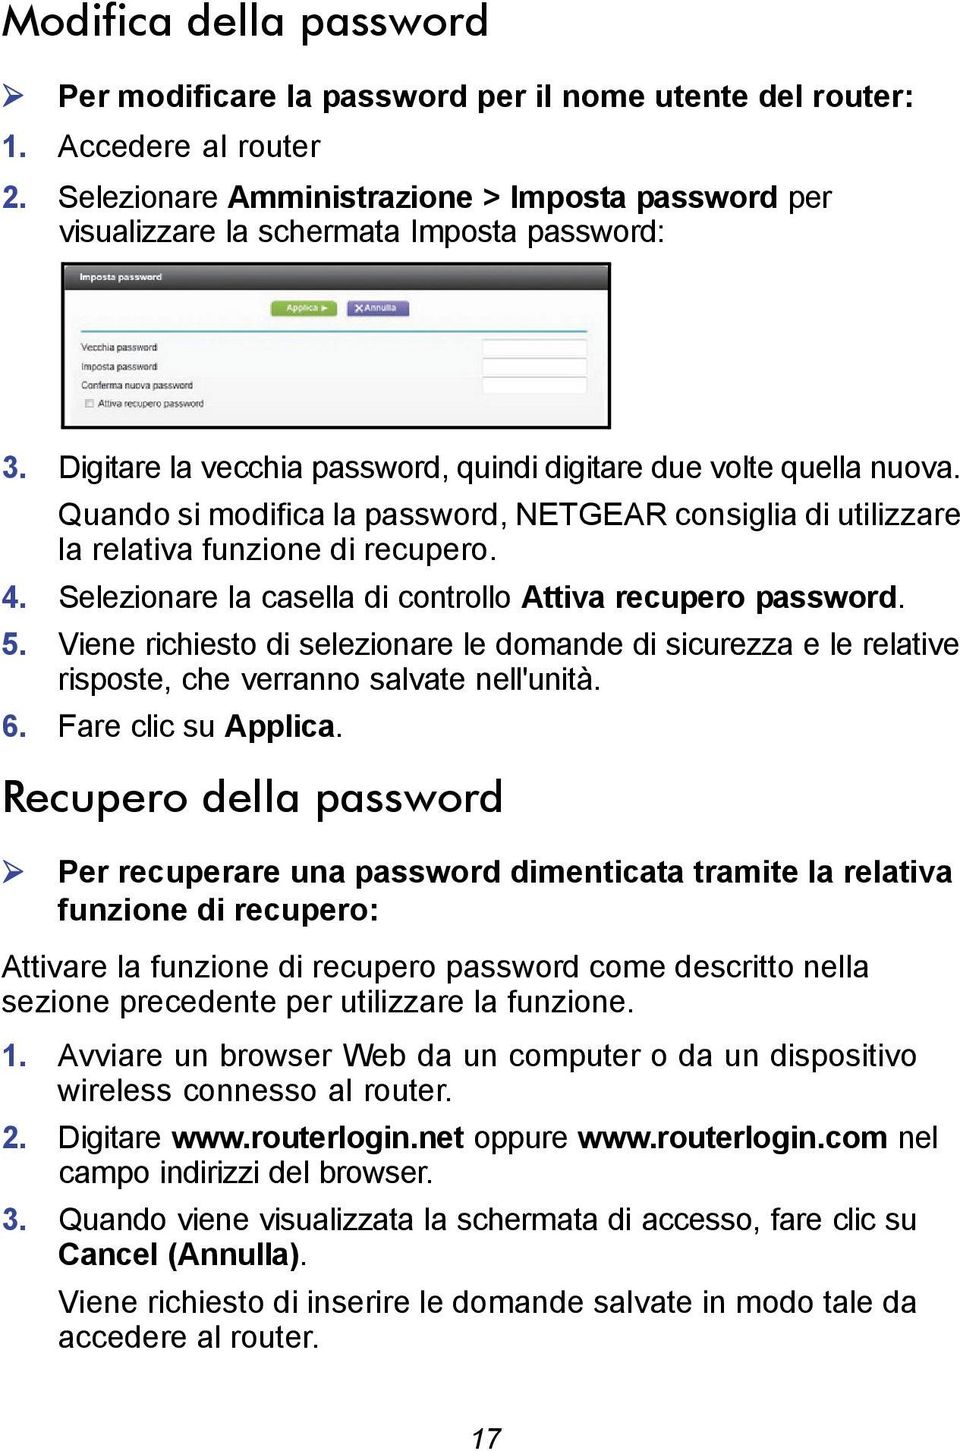 Quando si modifica la password, NETGEAR consiglia di utilizzare la relativa funzione di recupero. 4. Selezionare la casella di controllo Attiva recupero password. 5.